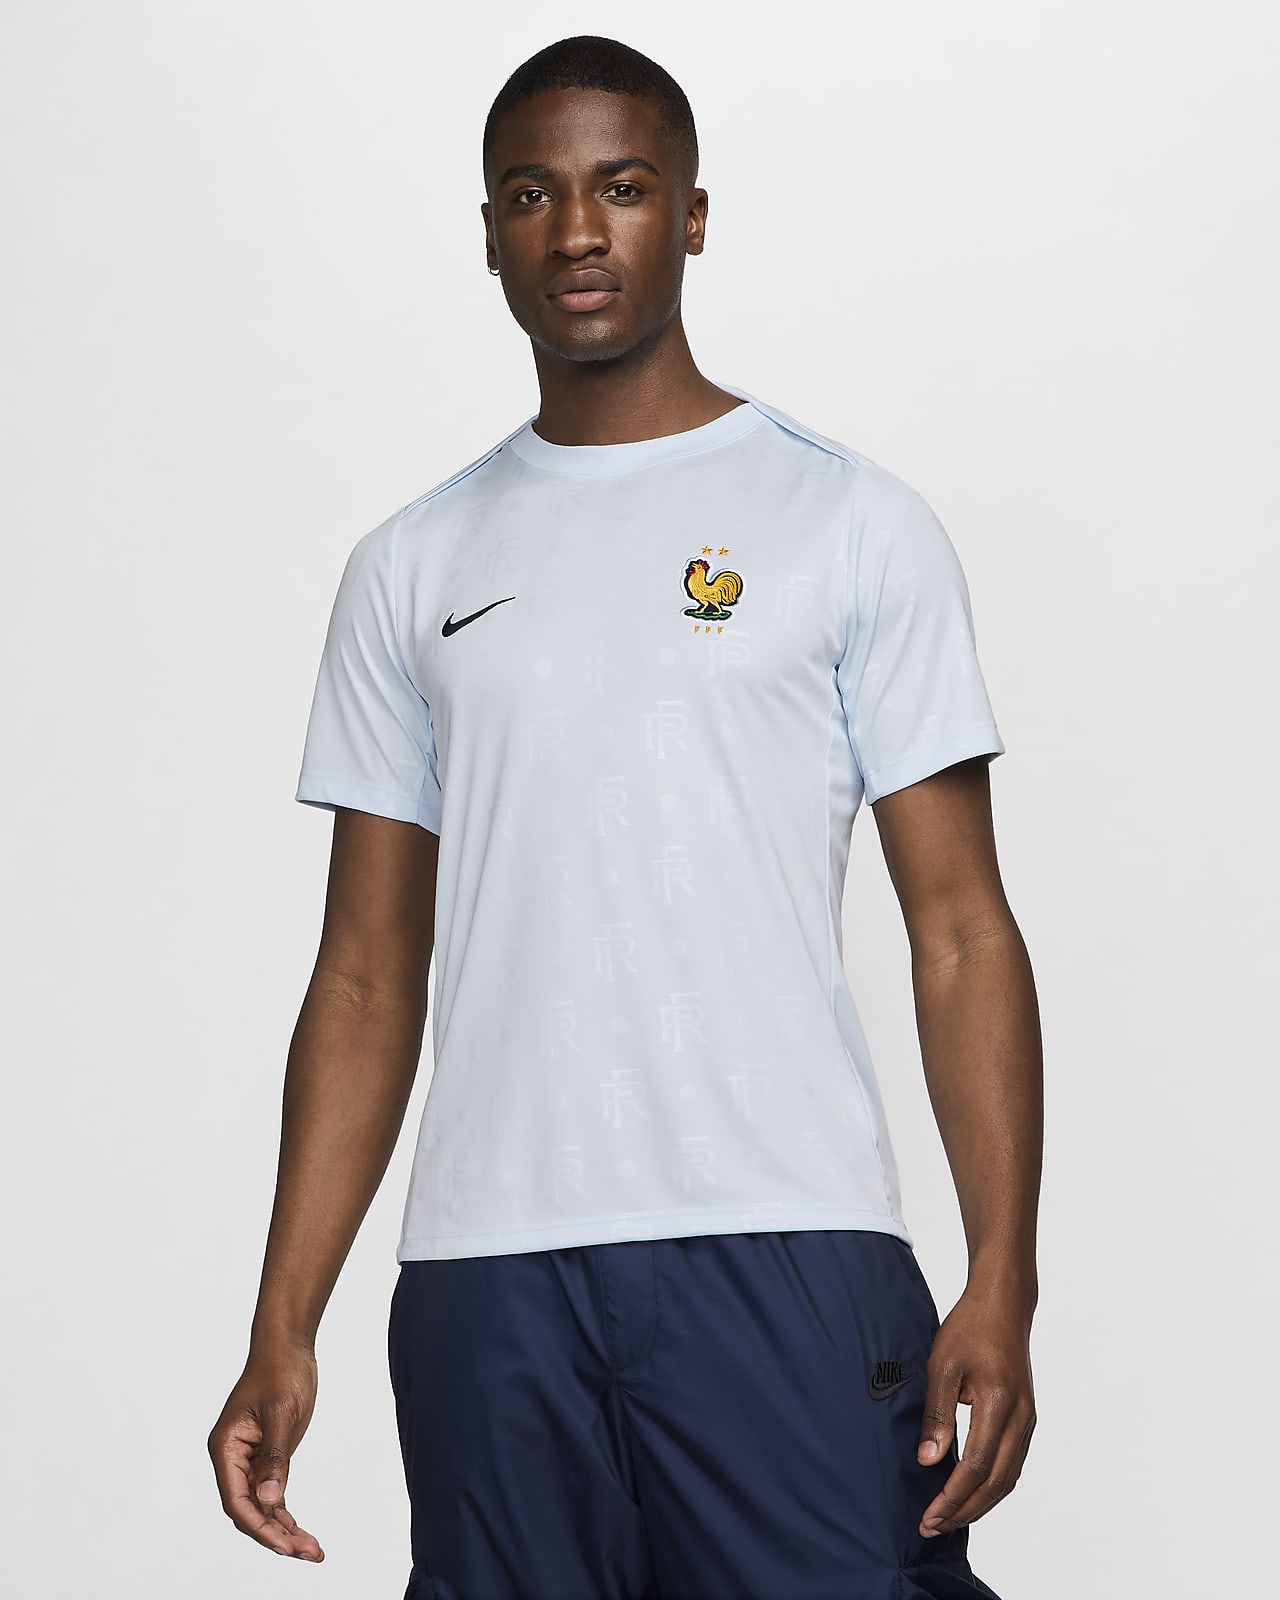 法国队 Academy Pro 客场 Nike Dri-FIT 男子速干赛前足球上衣